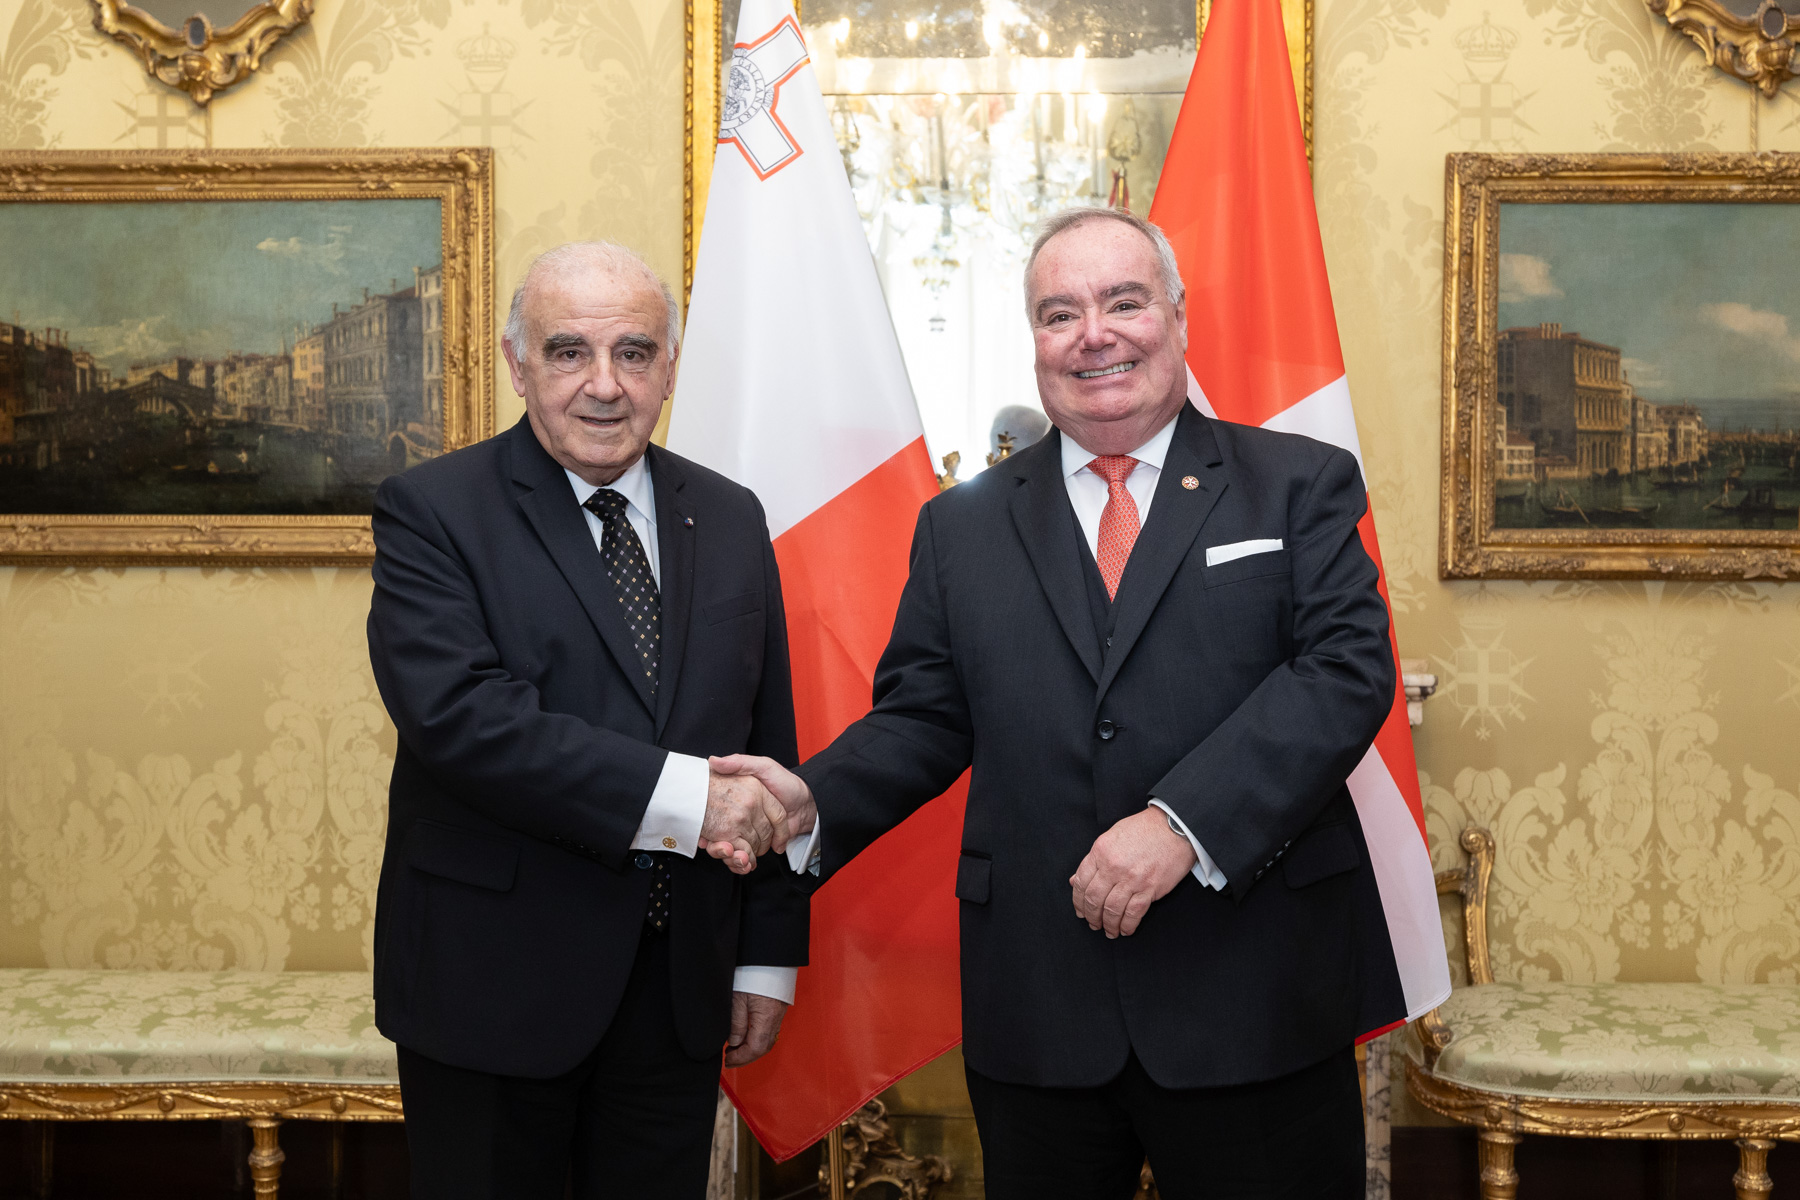 Der Präsident der Republik Malta zu einem offiziellen Besuch beim Großmeister